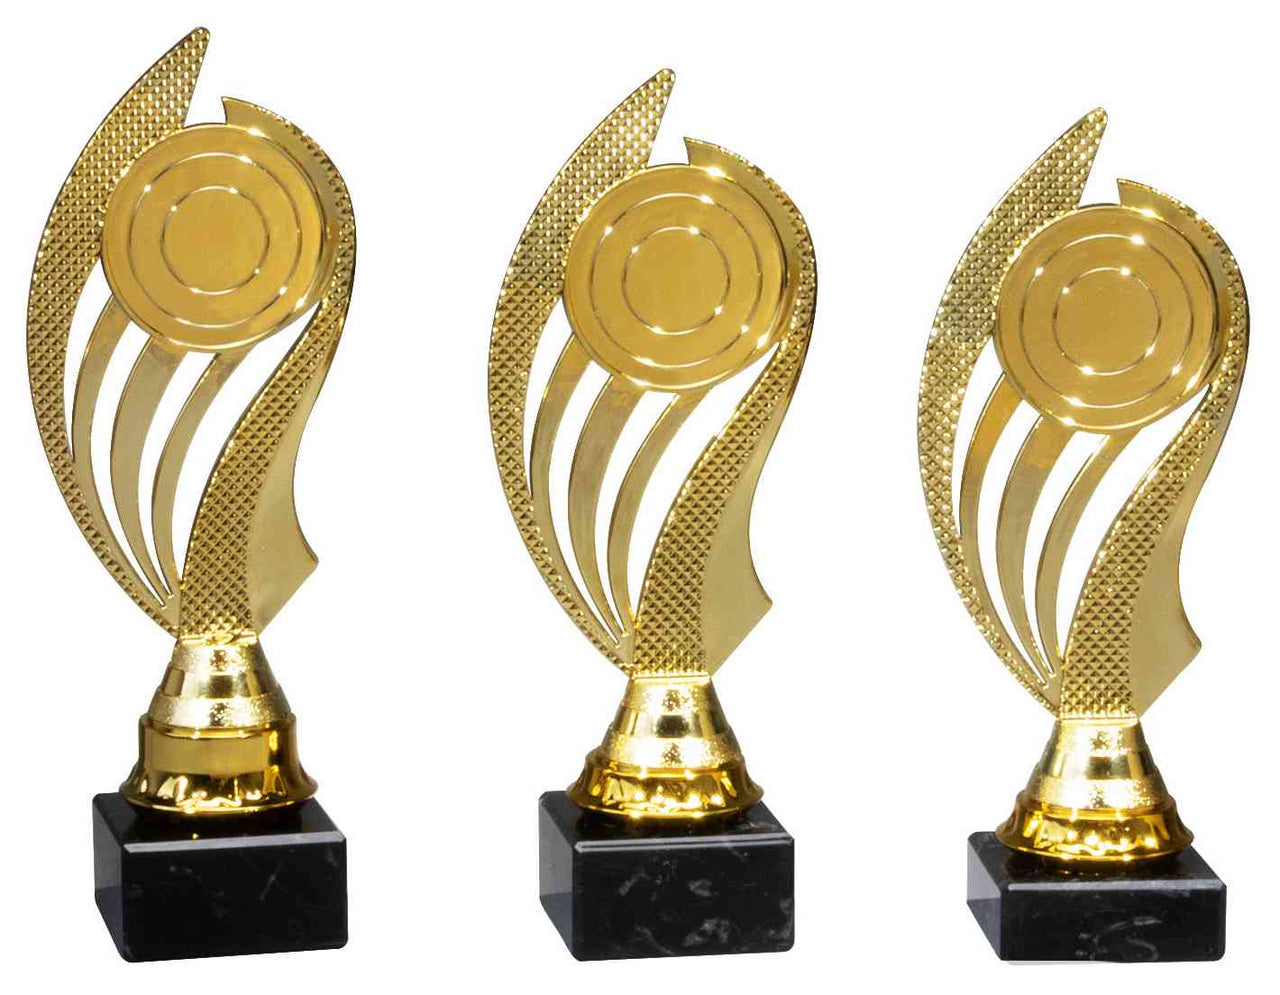 Drei goldene POMEKI Pokale Wetzlar 3- er Pokalserie 200 mm - 220 mm PK740450-3-E50 auf einem weißen Hintergrund.